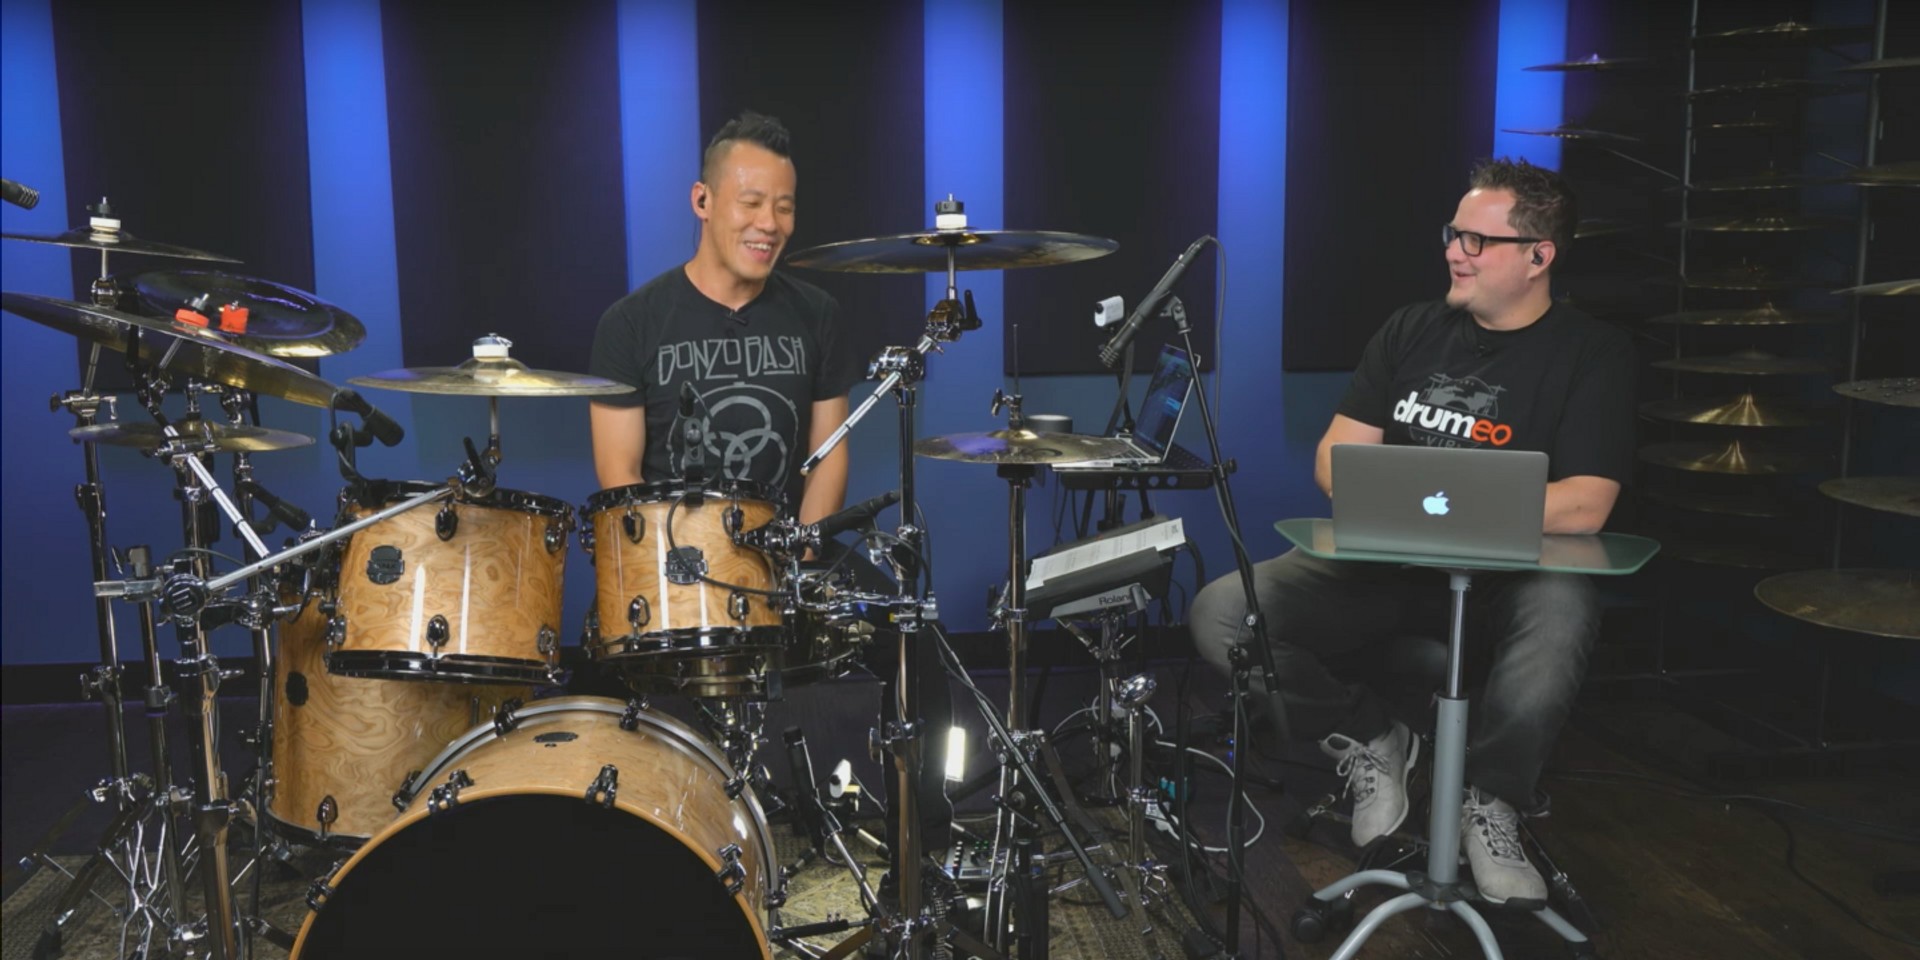 Watch Brandon Khoo teach drummers around the world on online platform Drumeo